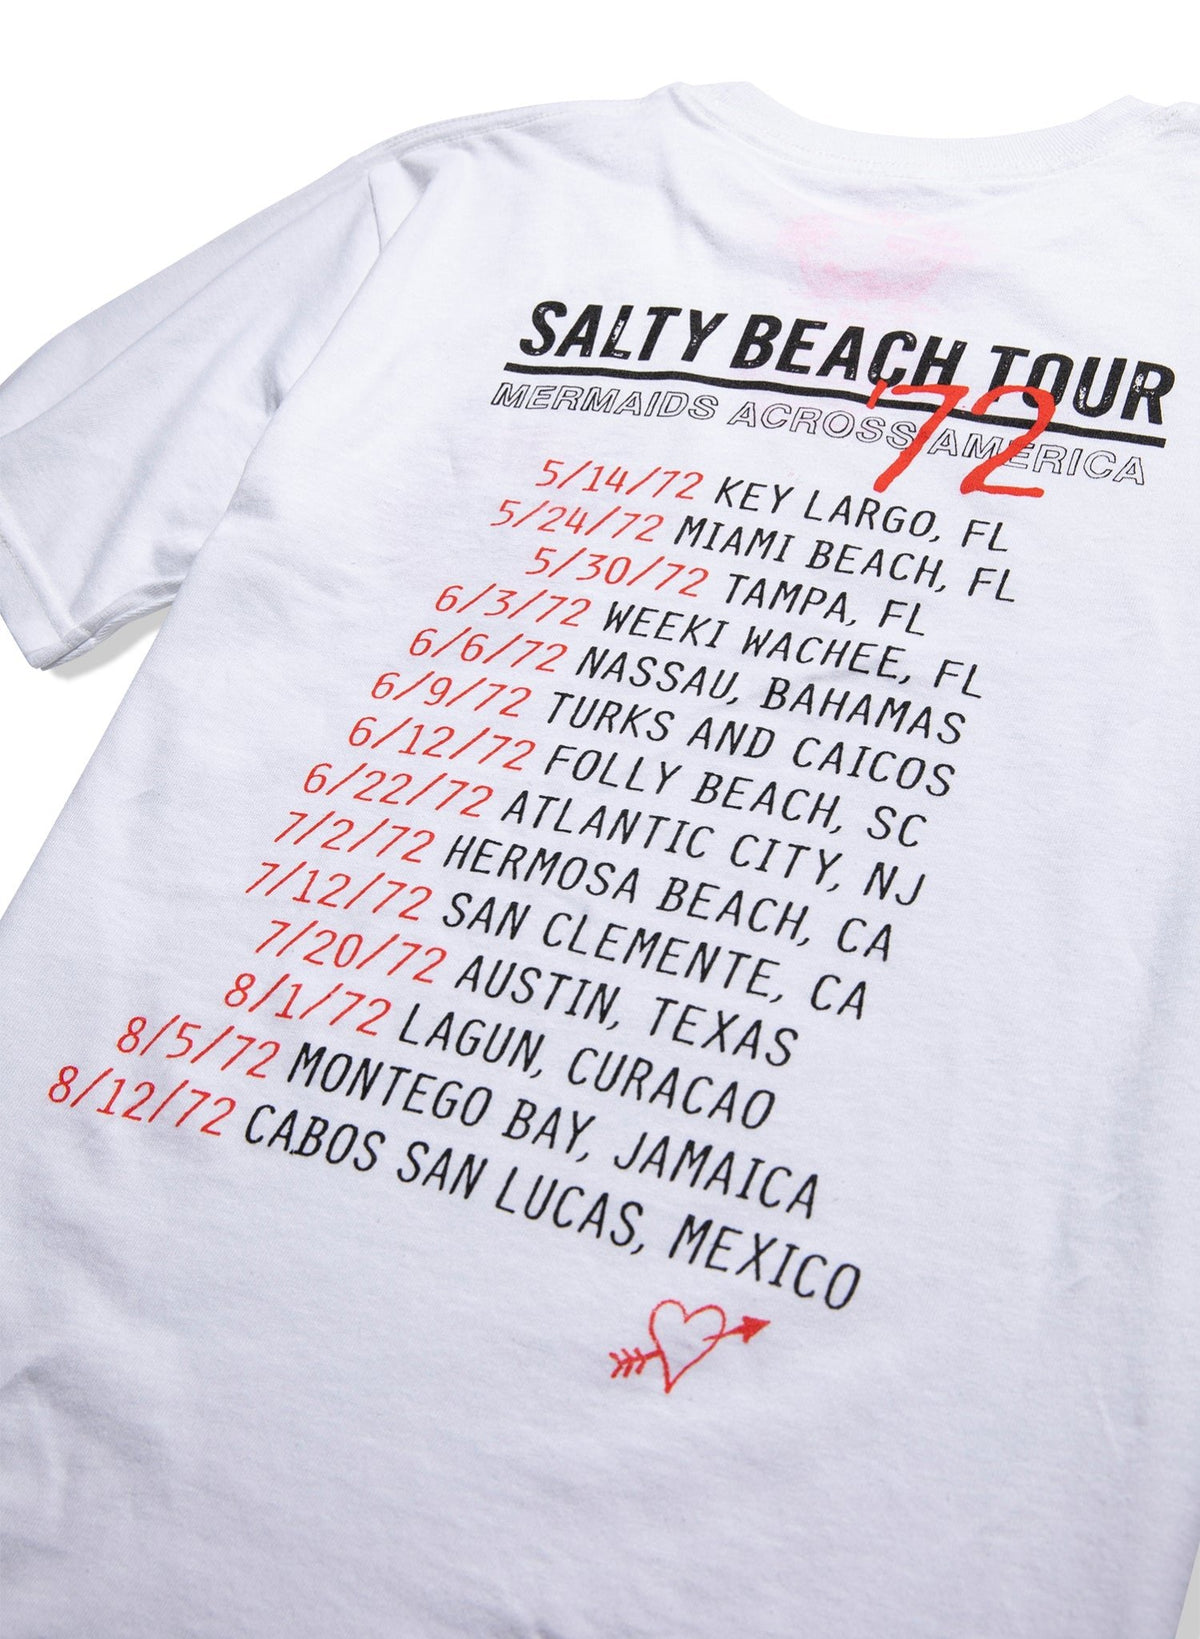 Salty Summer Tour Tee